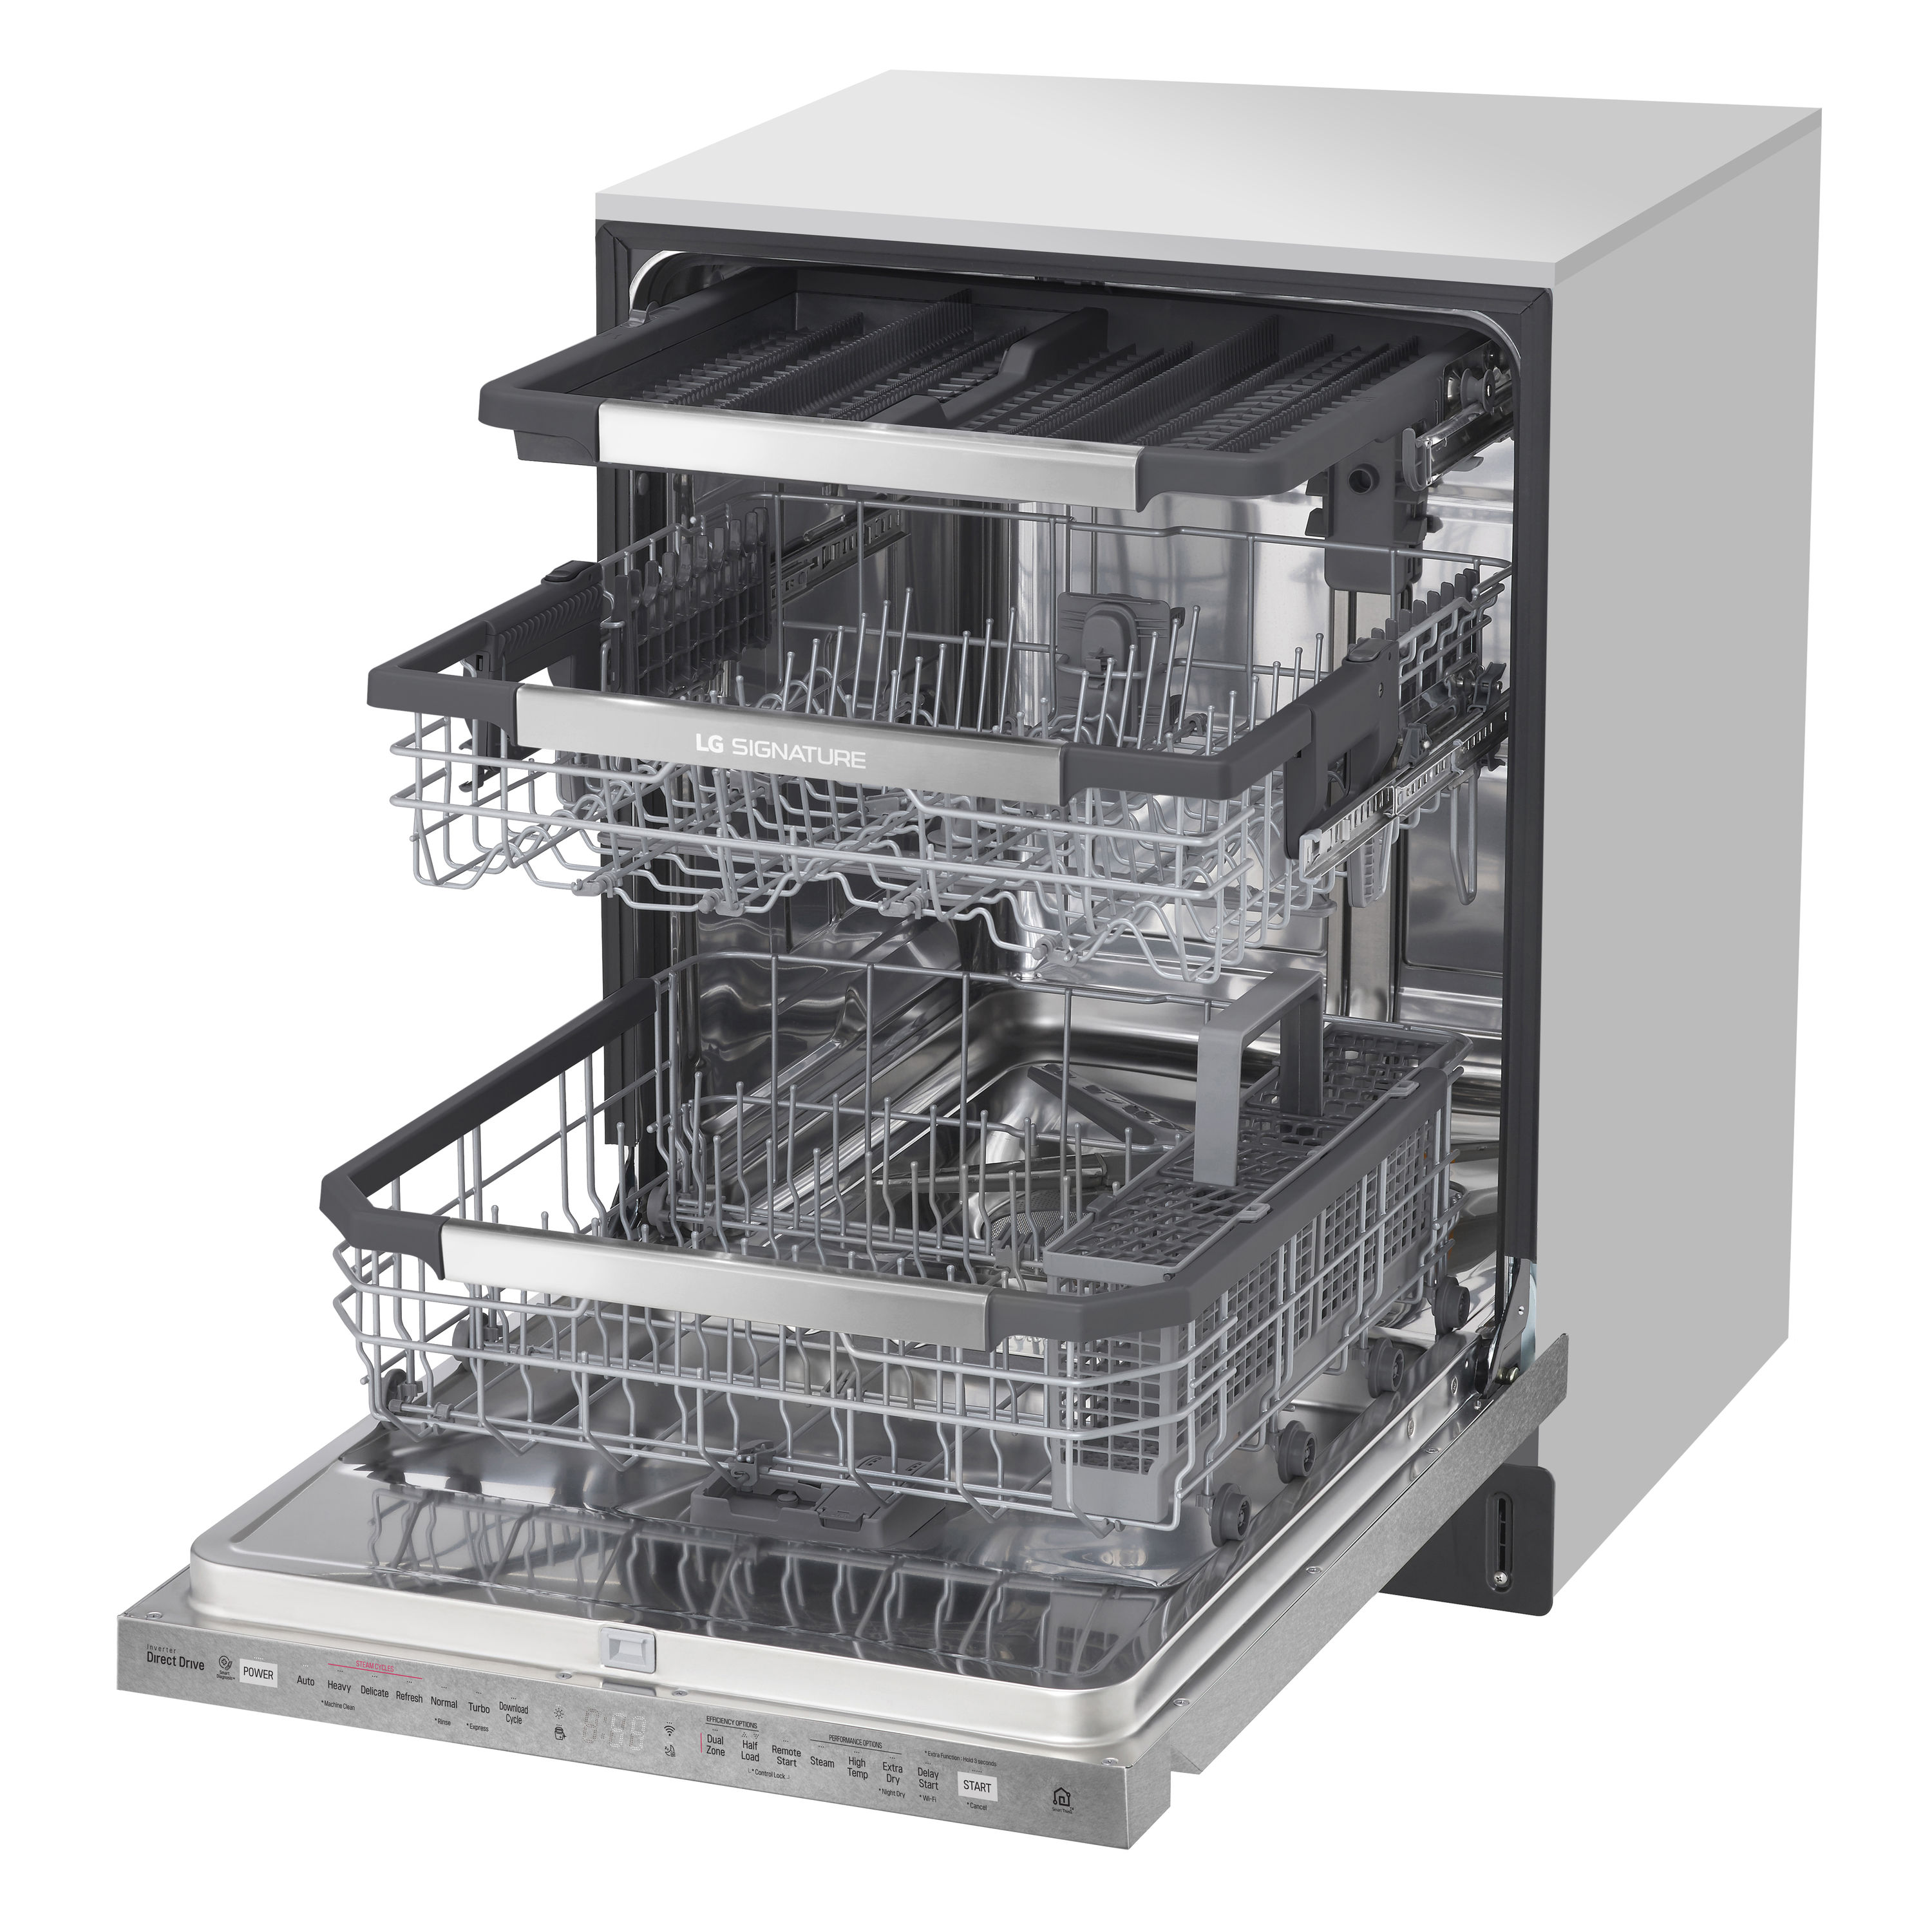 LG SIGNATURE Dishwasher, Products